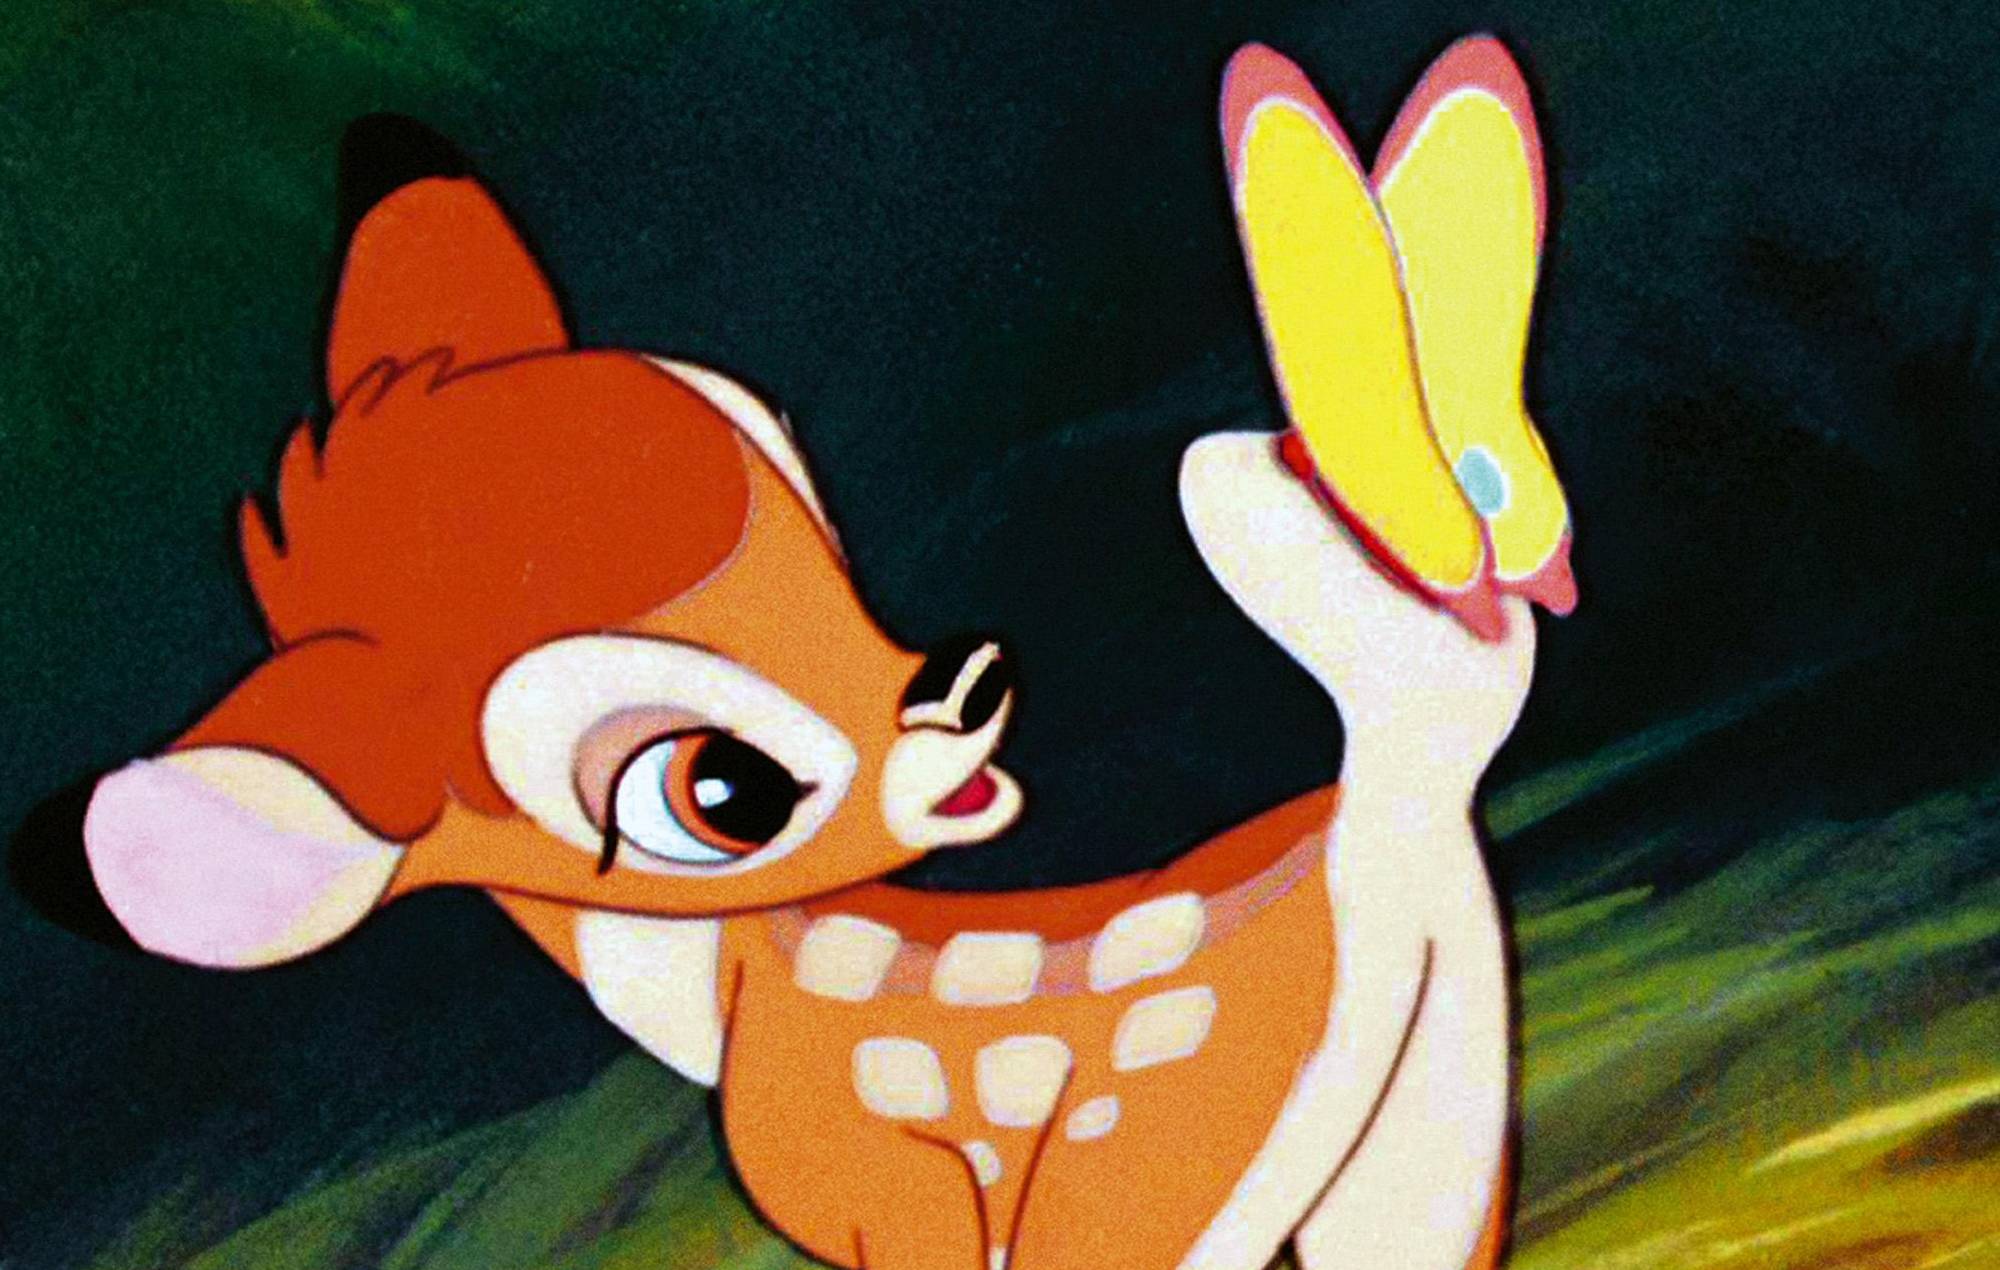 Bambi se convertirá en una "feroz máquina de matar" en el próximo remake de terror